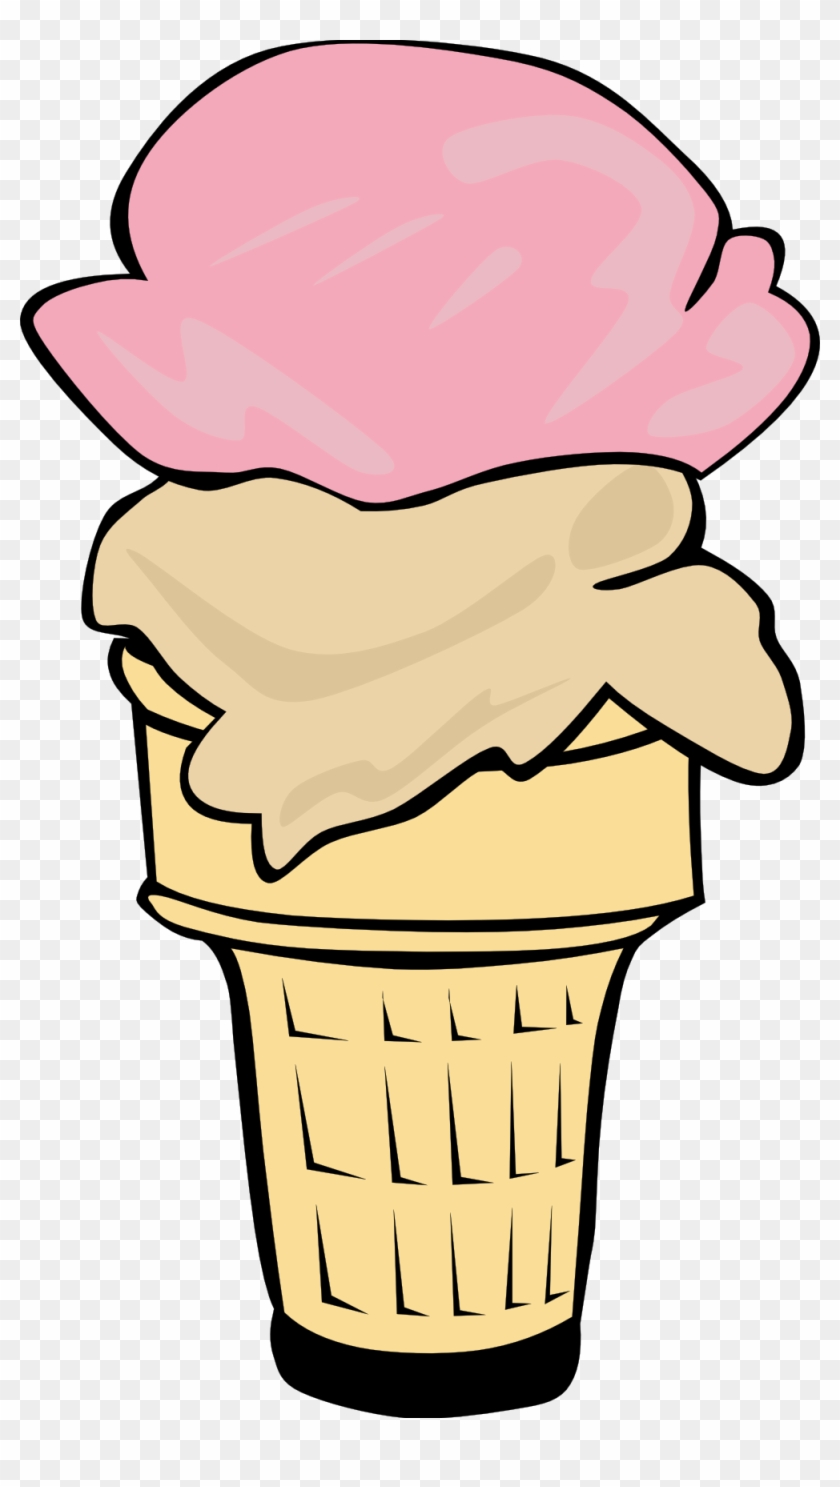 Ice Cream Cone Free Download Clipart - Ice Cream Cone Clip Art - Png Download #459232